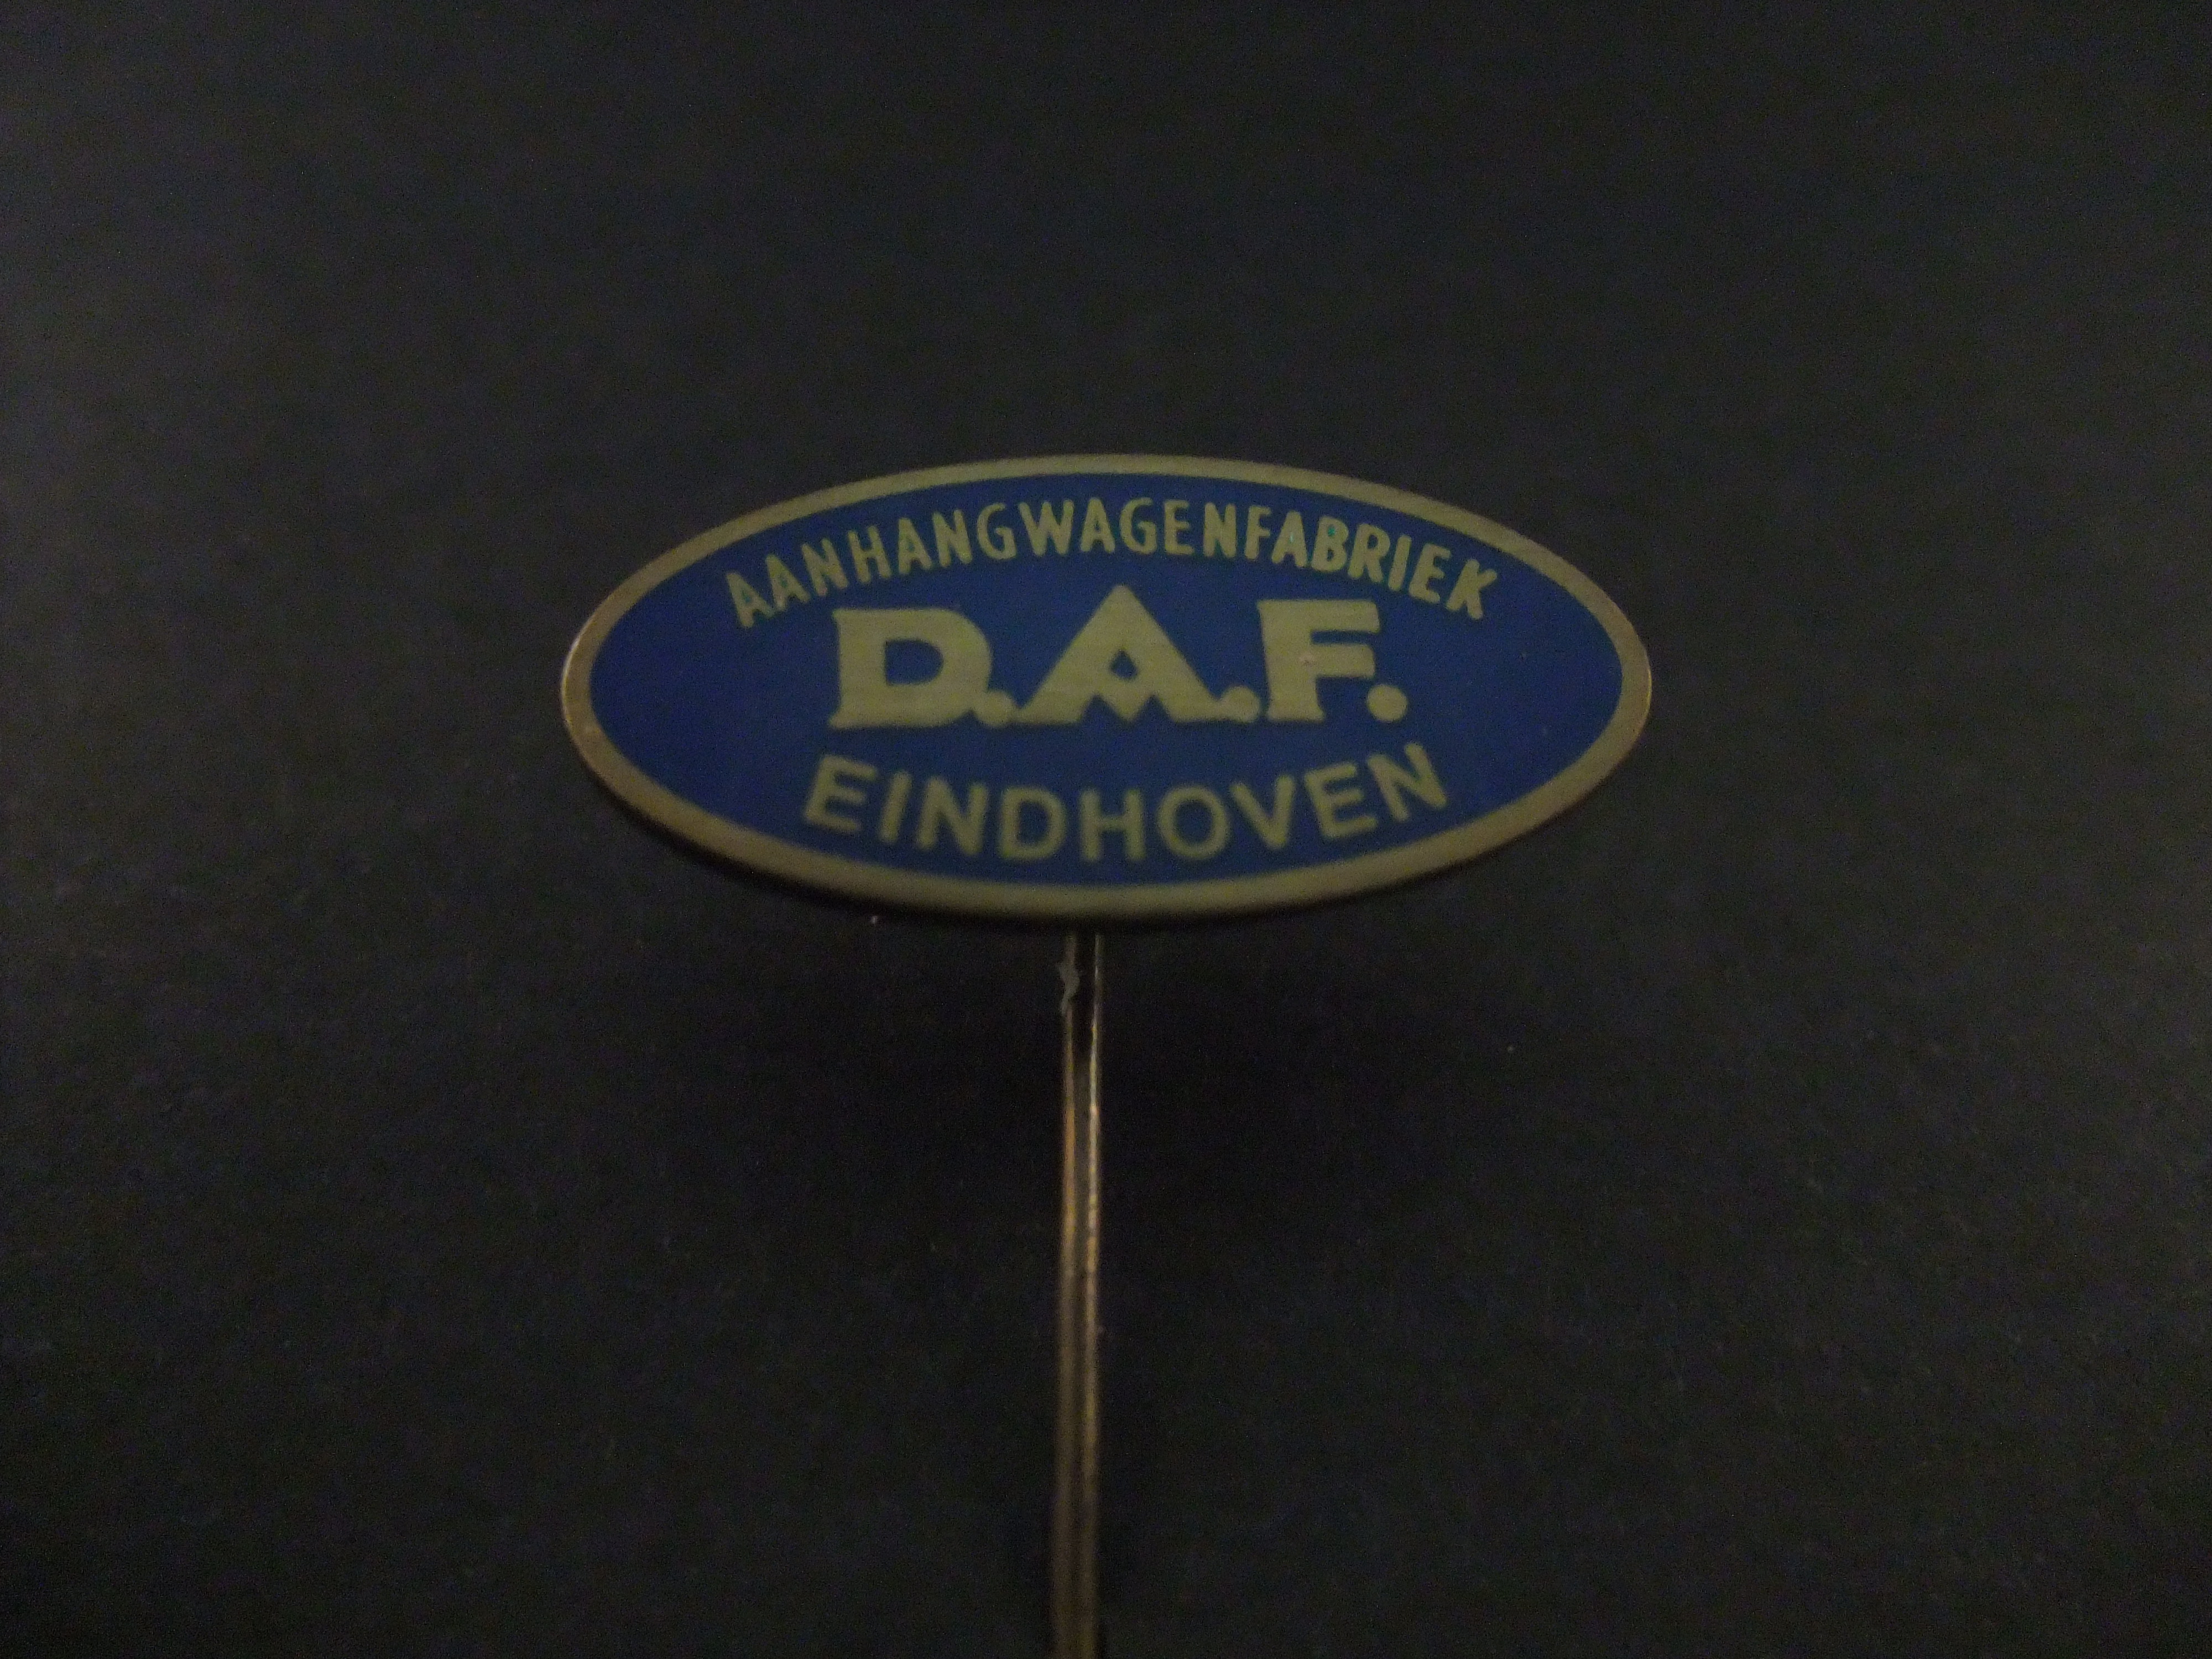 DAF ( Van Doorne Aanhangwagen Fabriek) ,Eindhoven, blauw-goudkleurig , emaille uitvoering